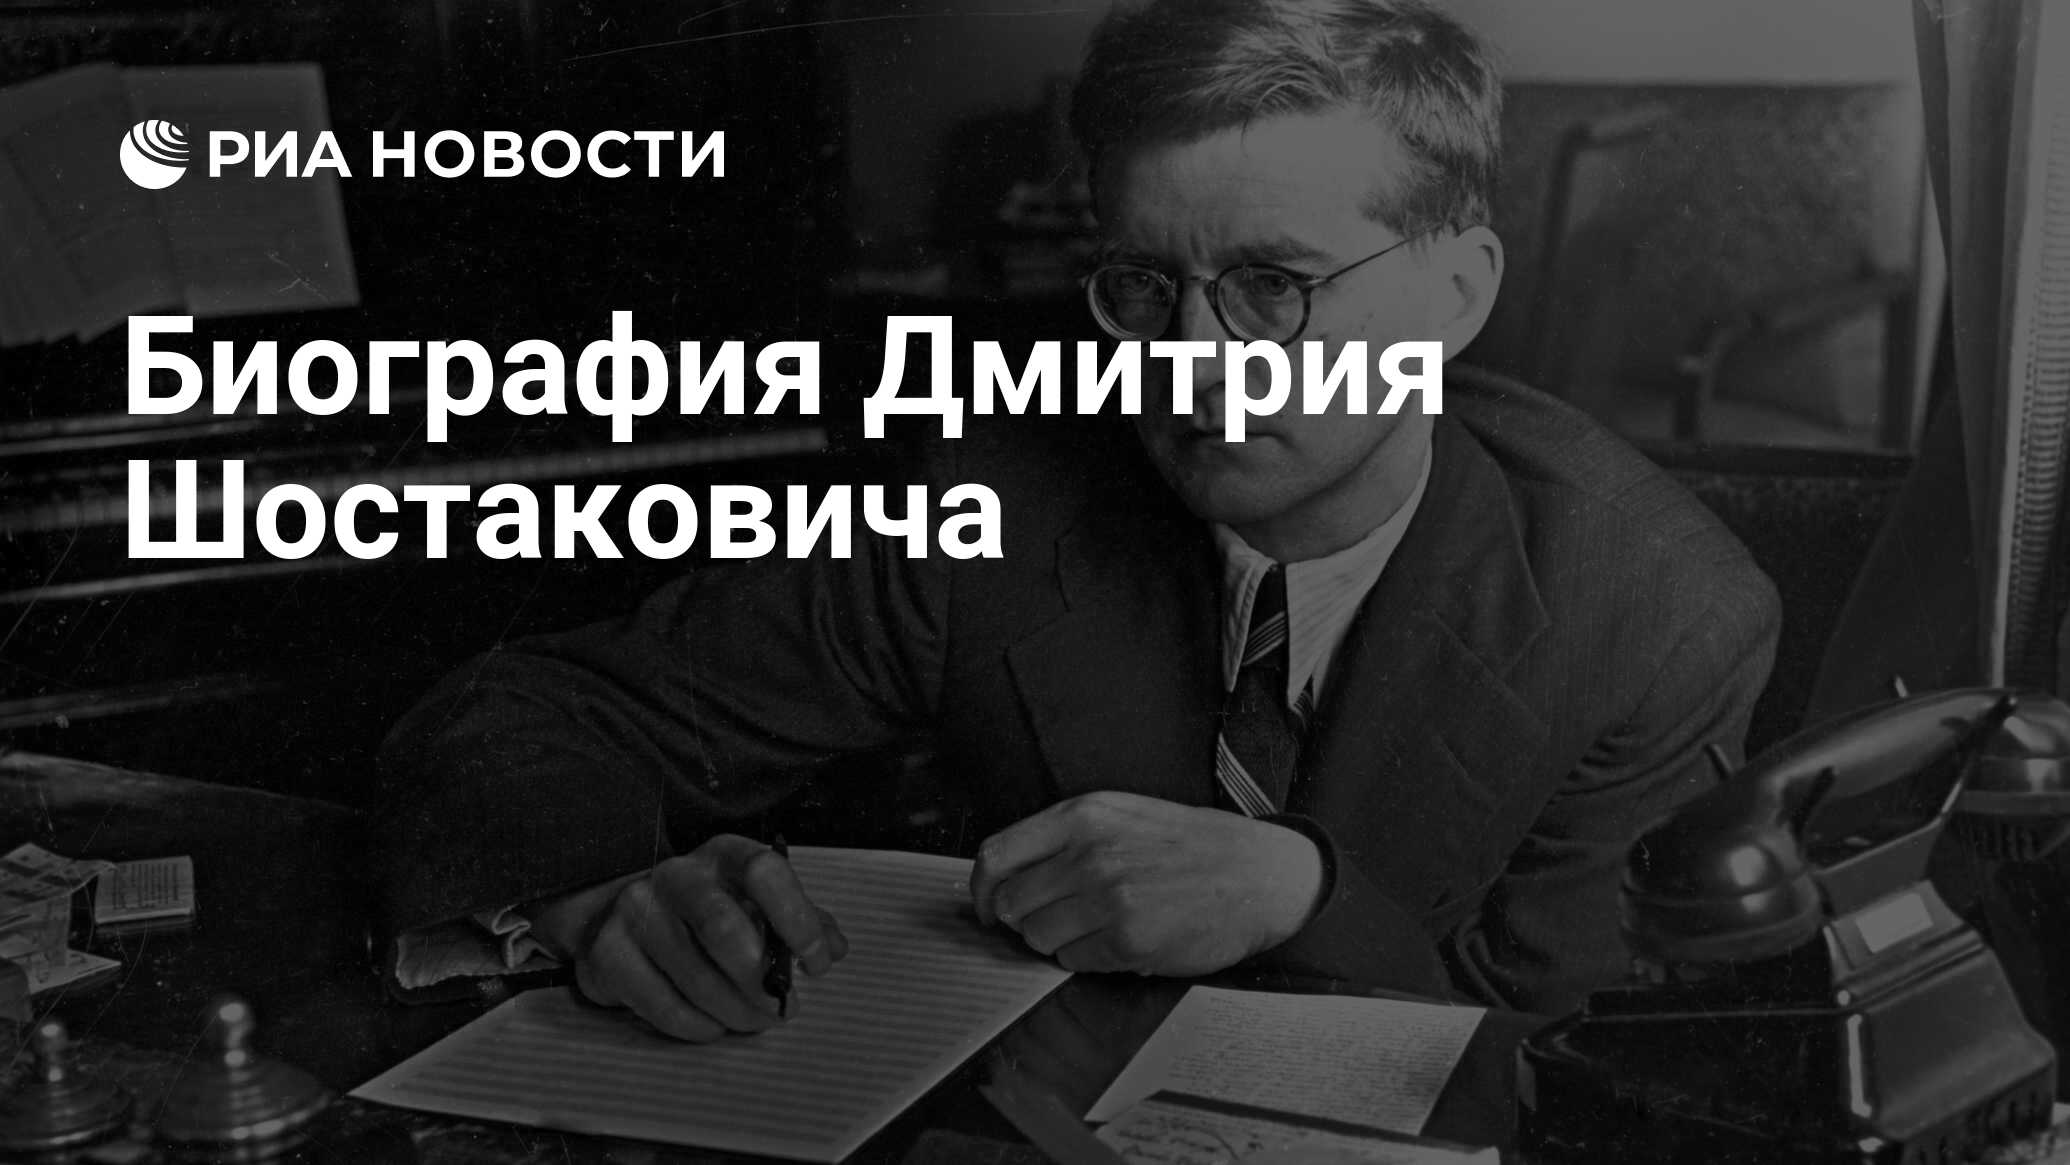 Биография Дмитрия Шостаковича - РИА Новости, 03.03.2020